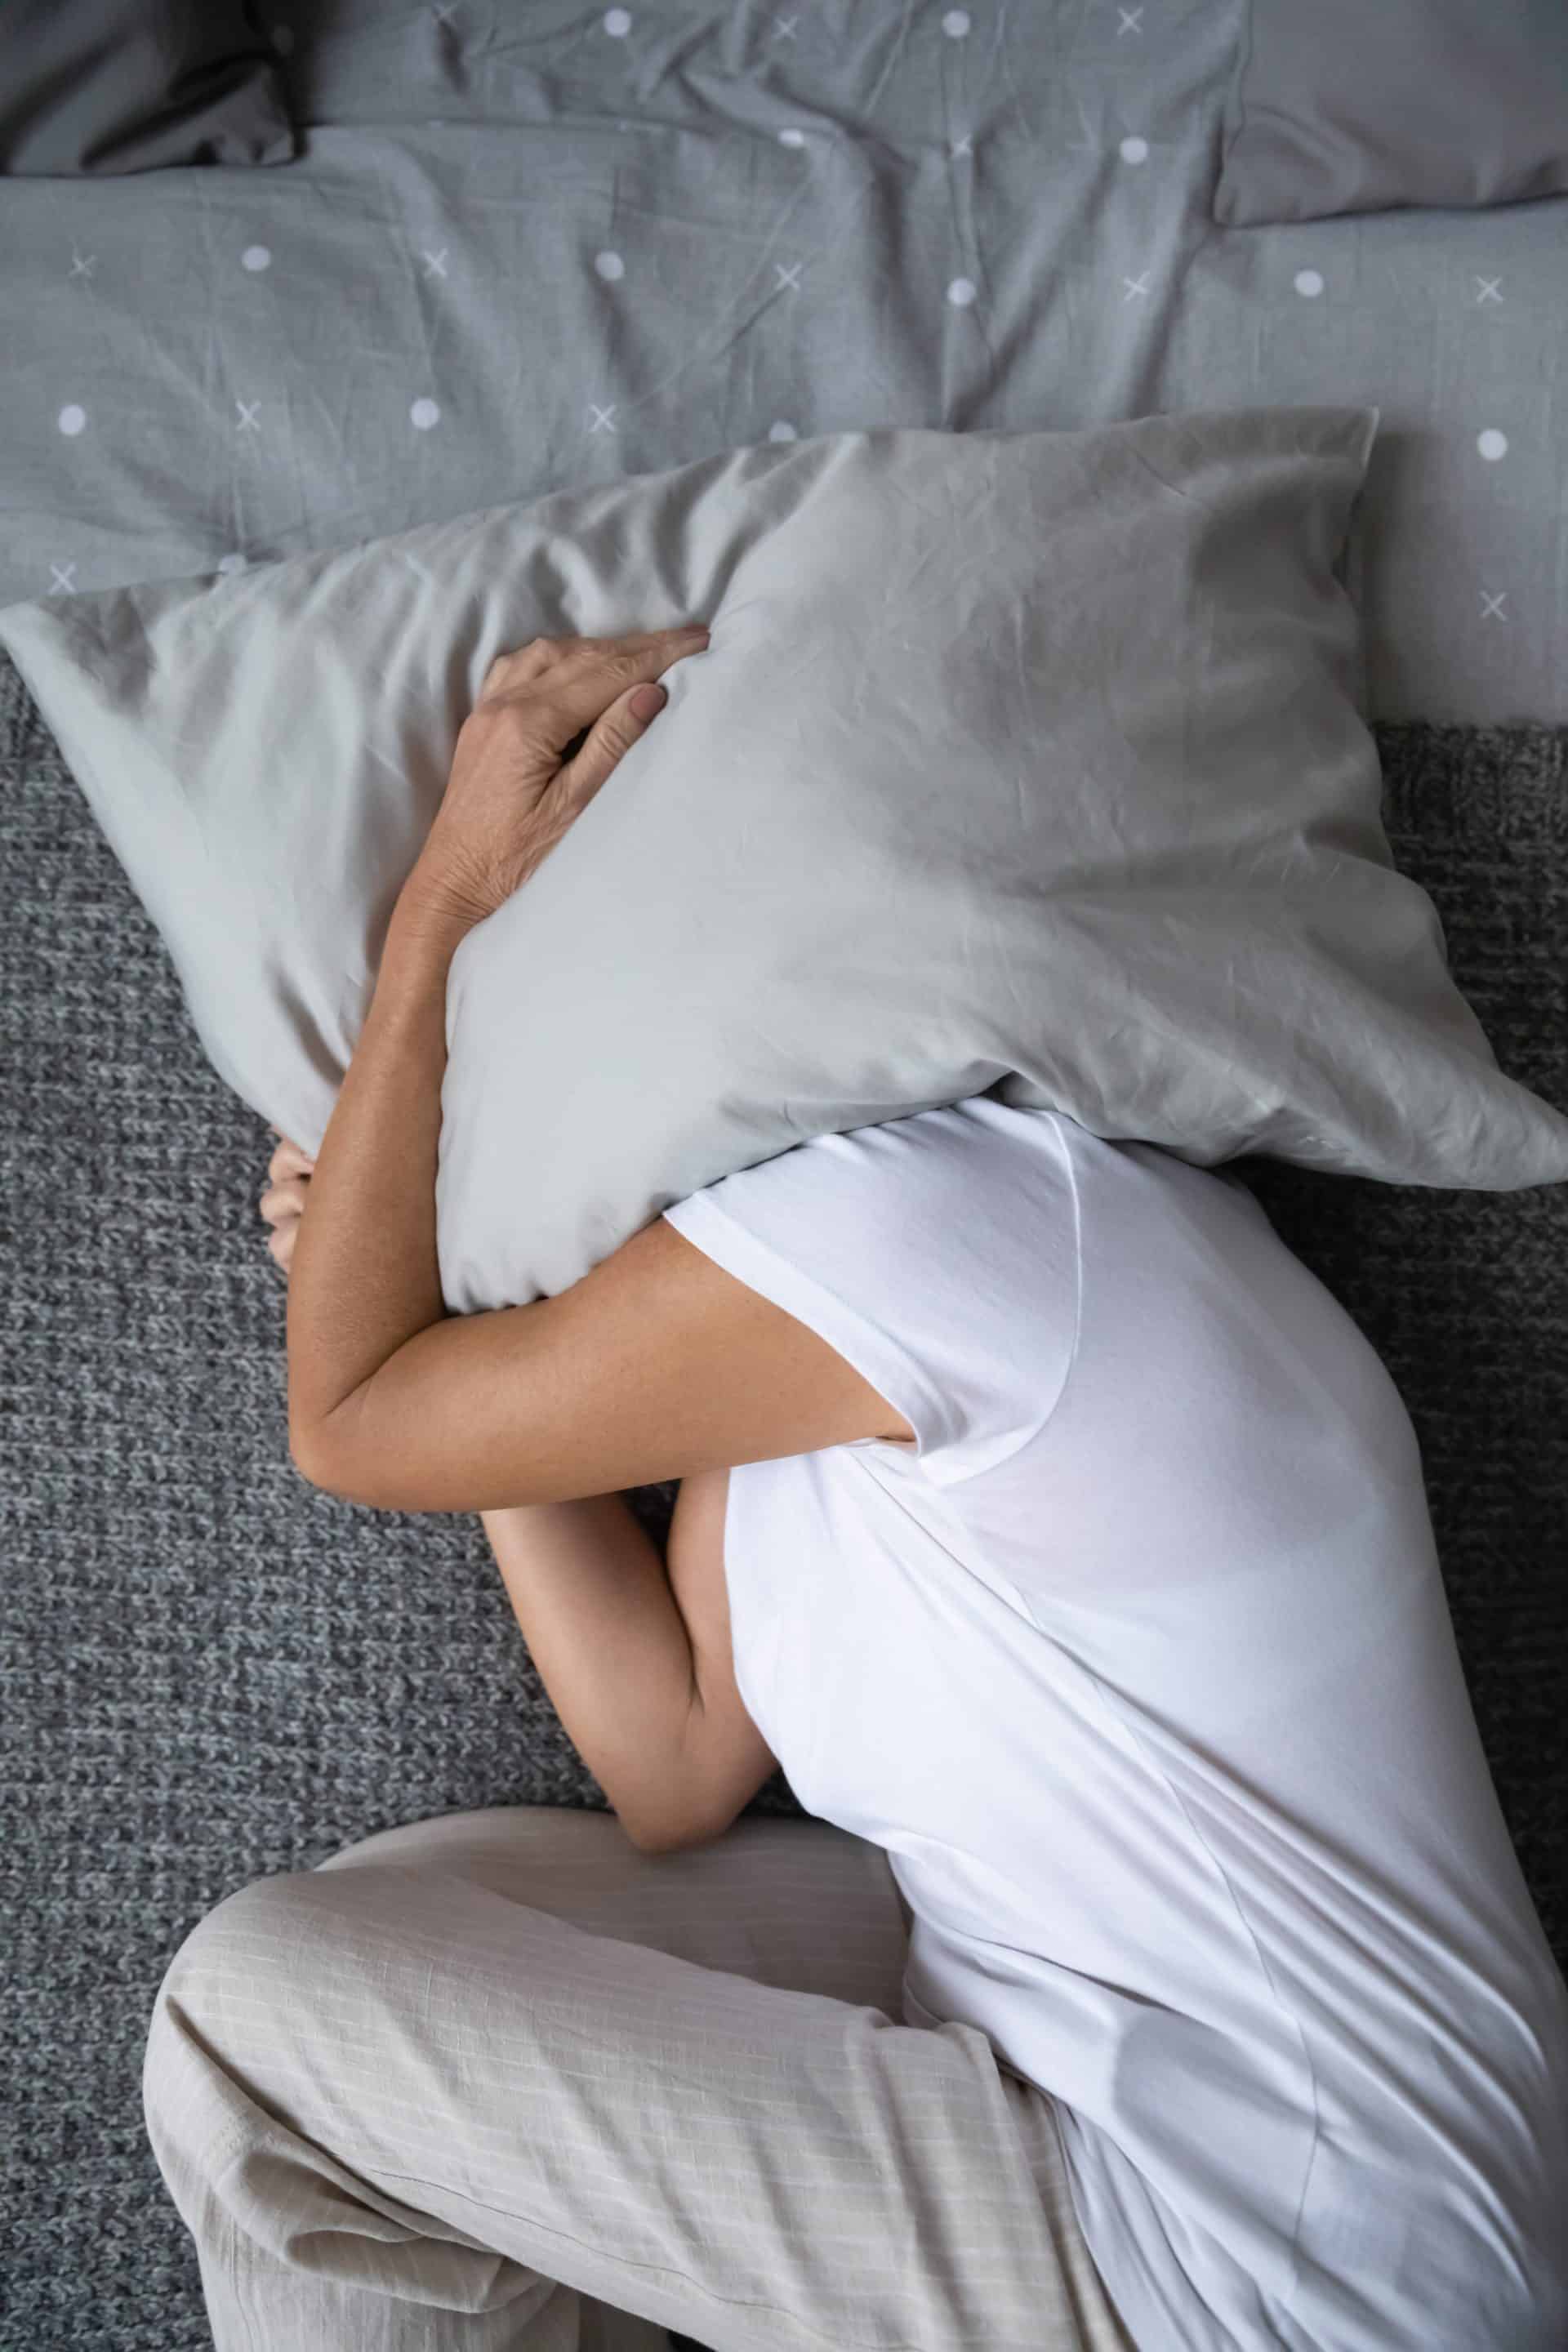 Women under pillow cant sleep